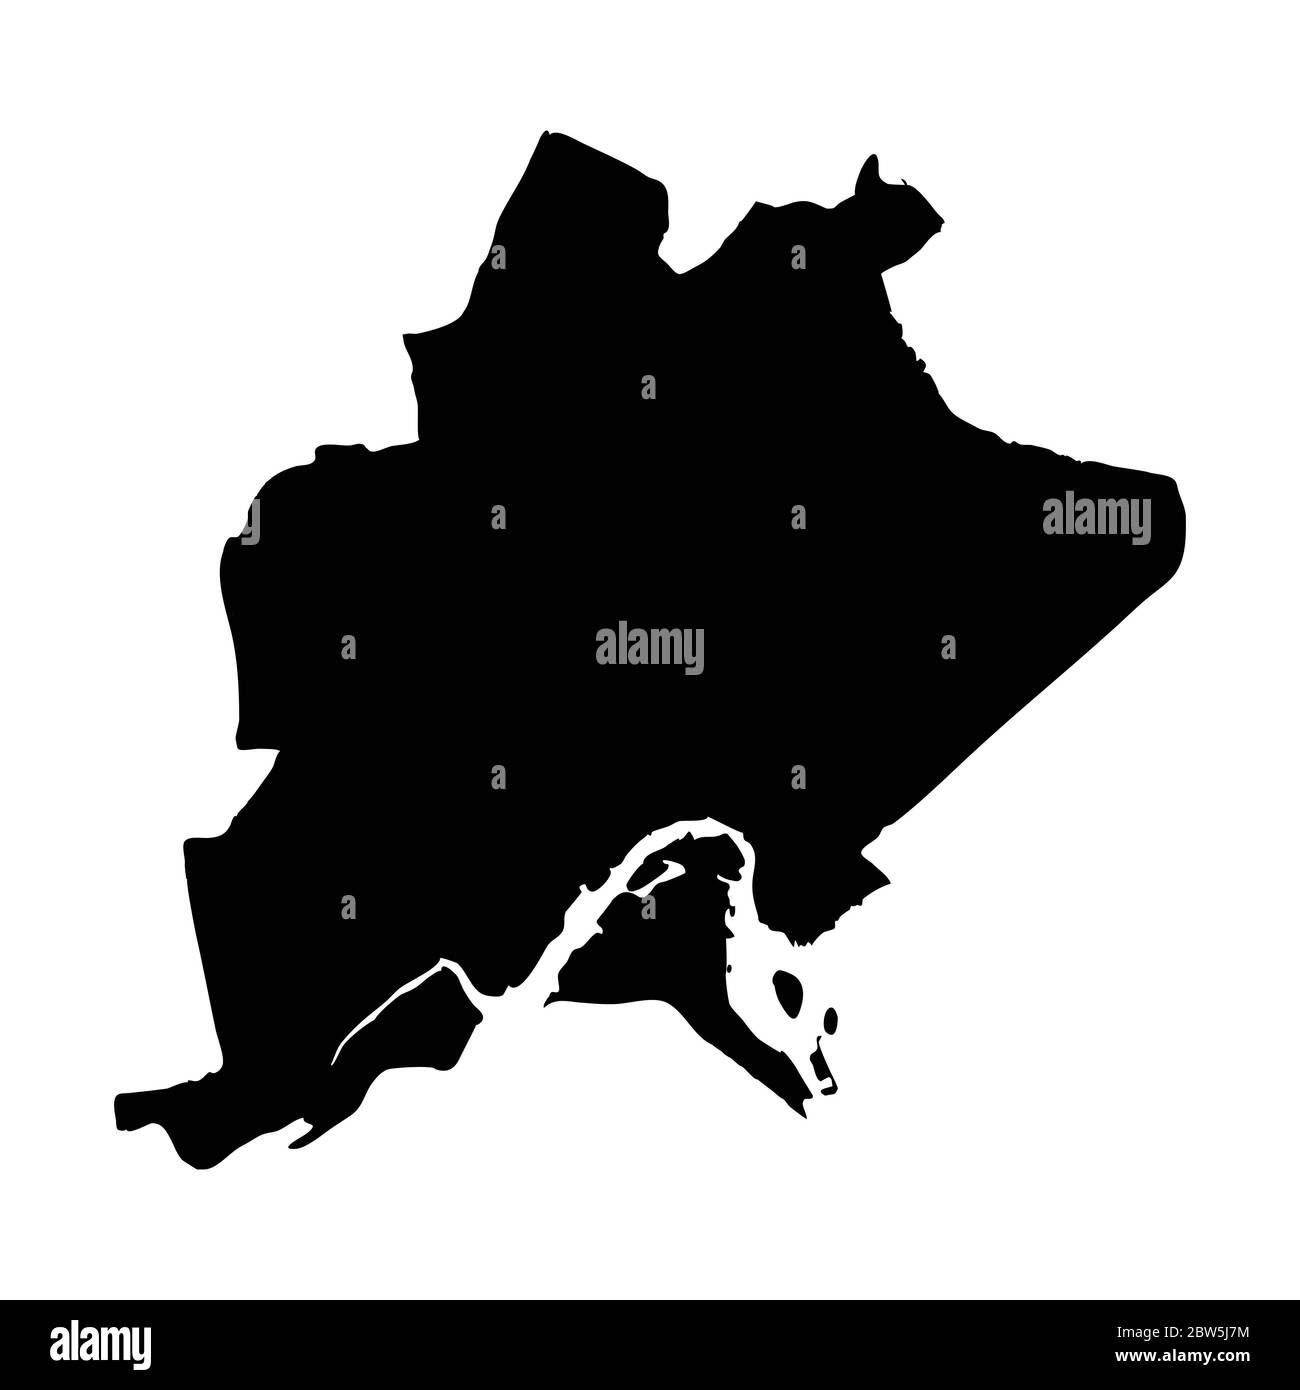 Mappa vettoriale Bandar seri Begawan. Illustrazione vettoriale isolata. Nero su sfondo bianco. Illustrazione EPS 10. Illustrazione Vettoriale